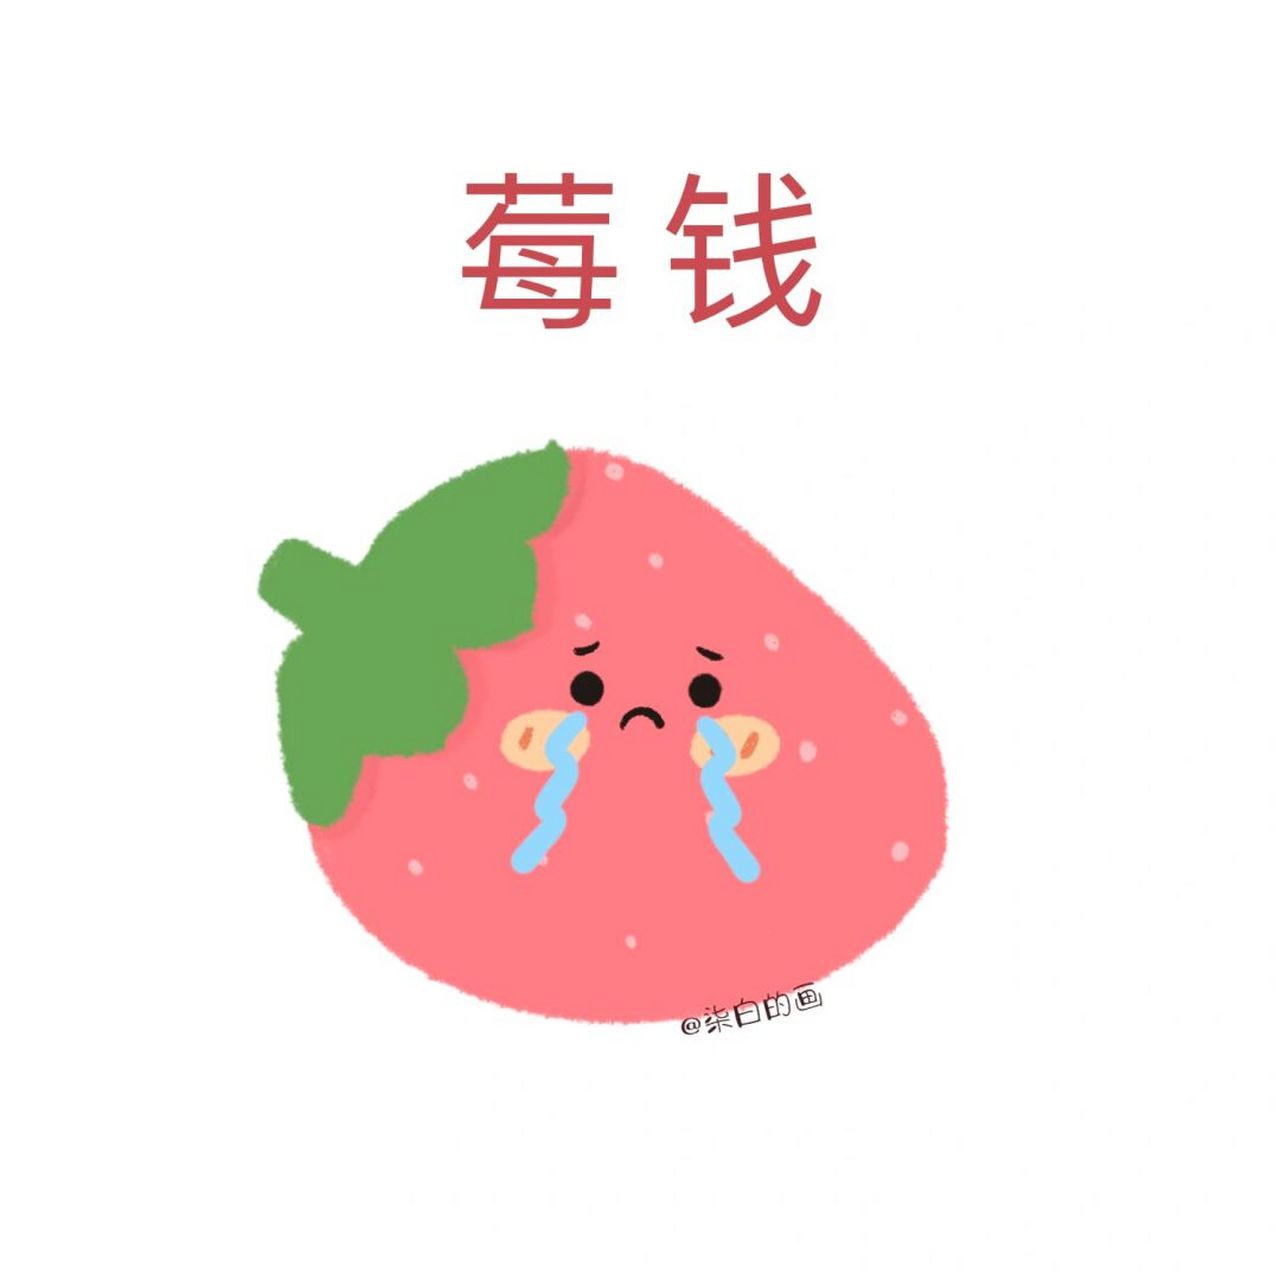 莓心莓肺的头像图片